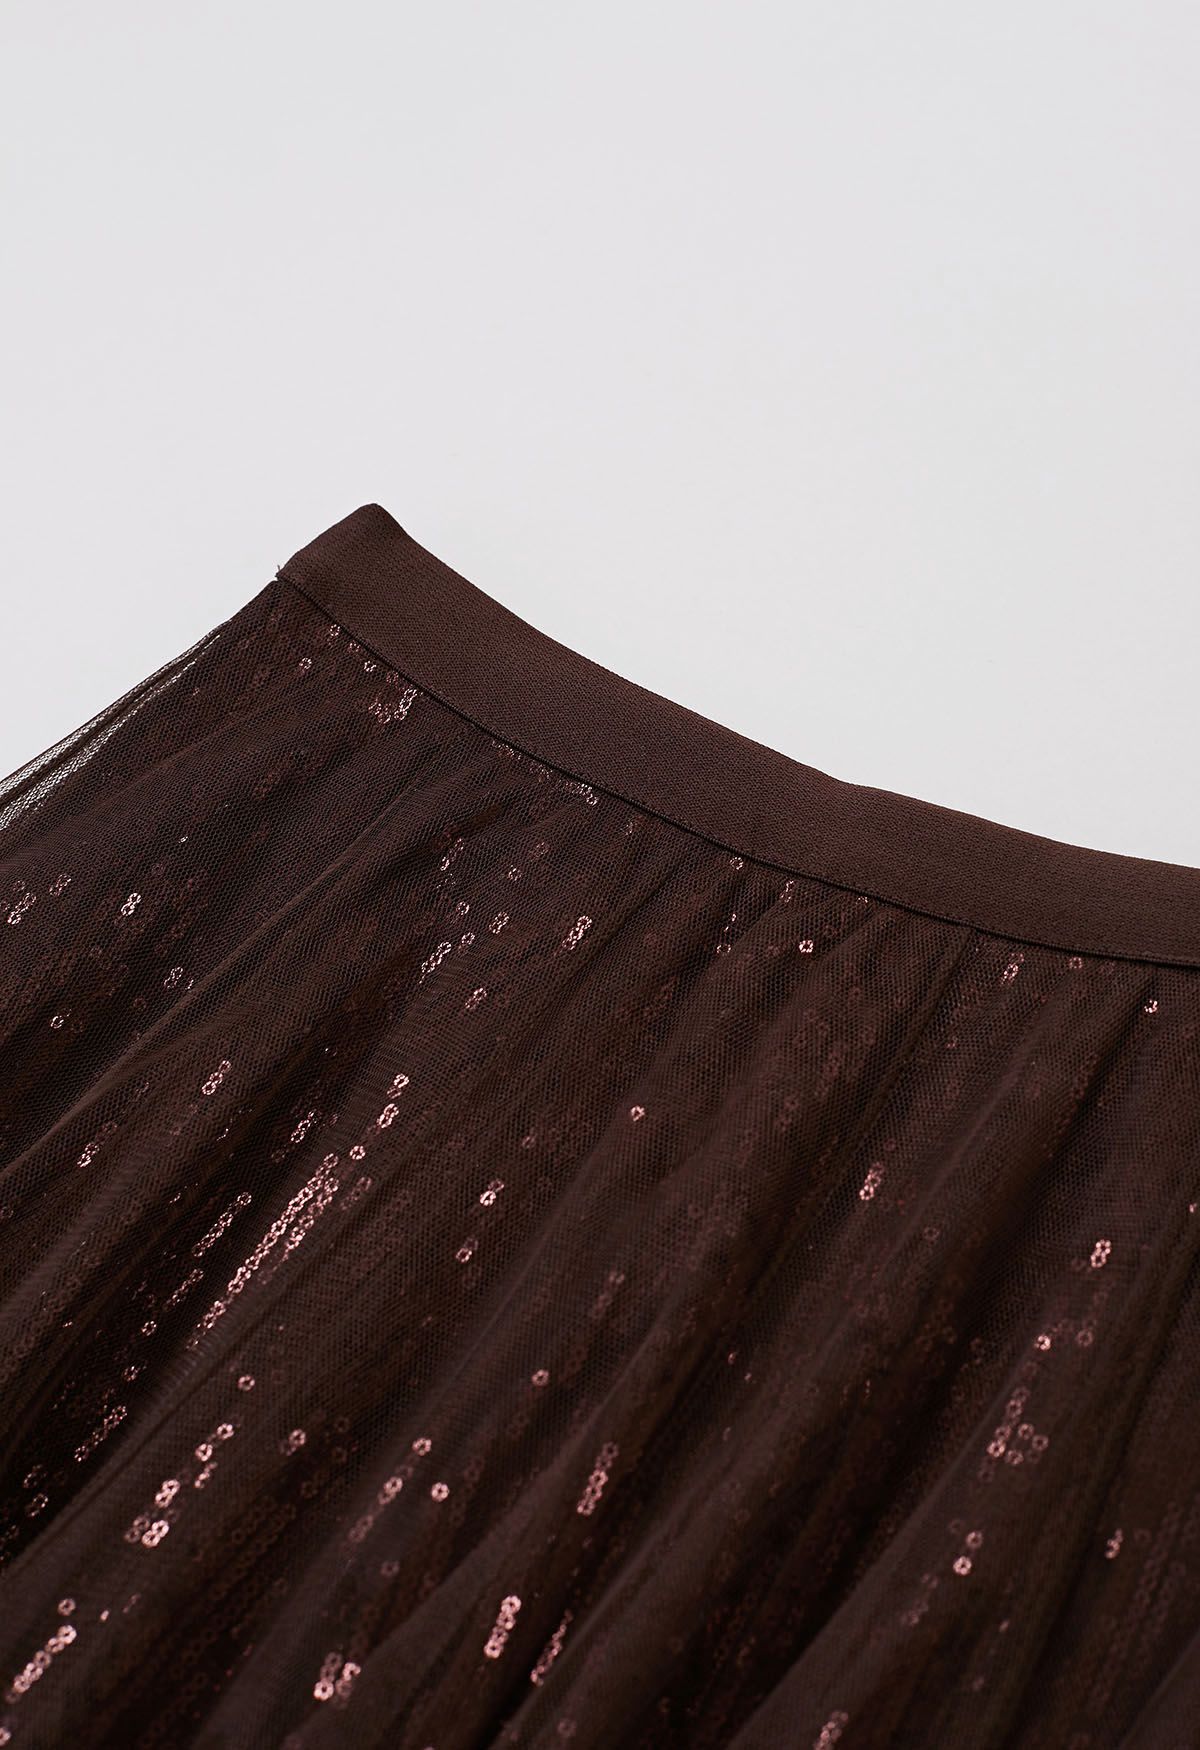 Falda midi de tul y malla con lentejuelas deslumbrantes en marrón